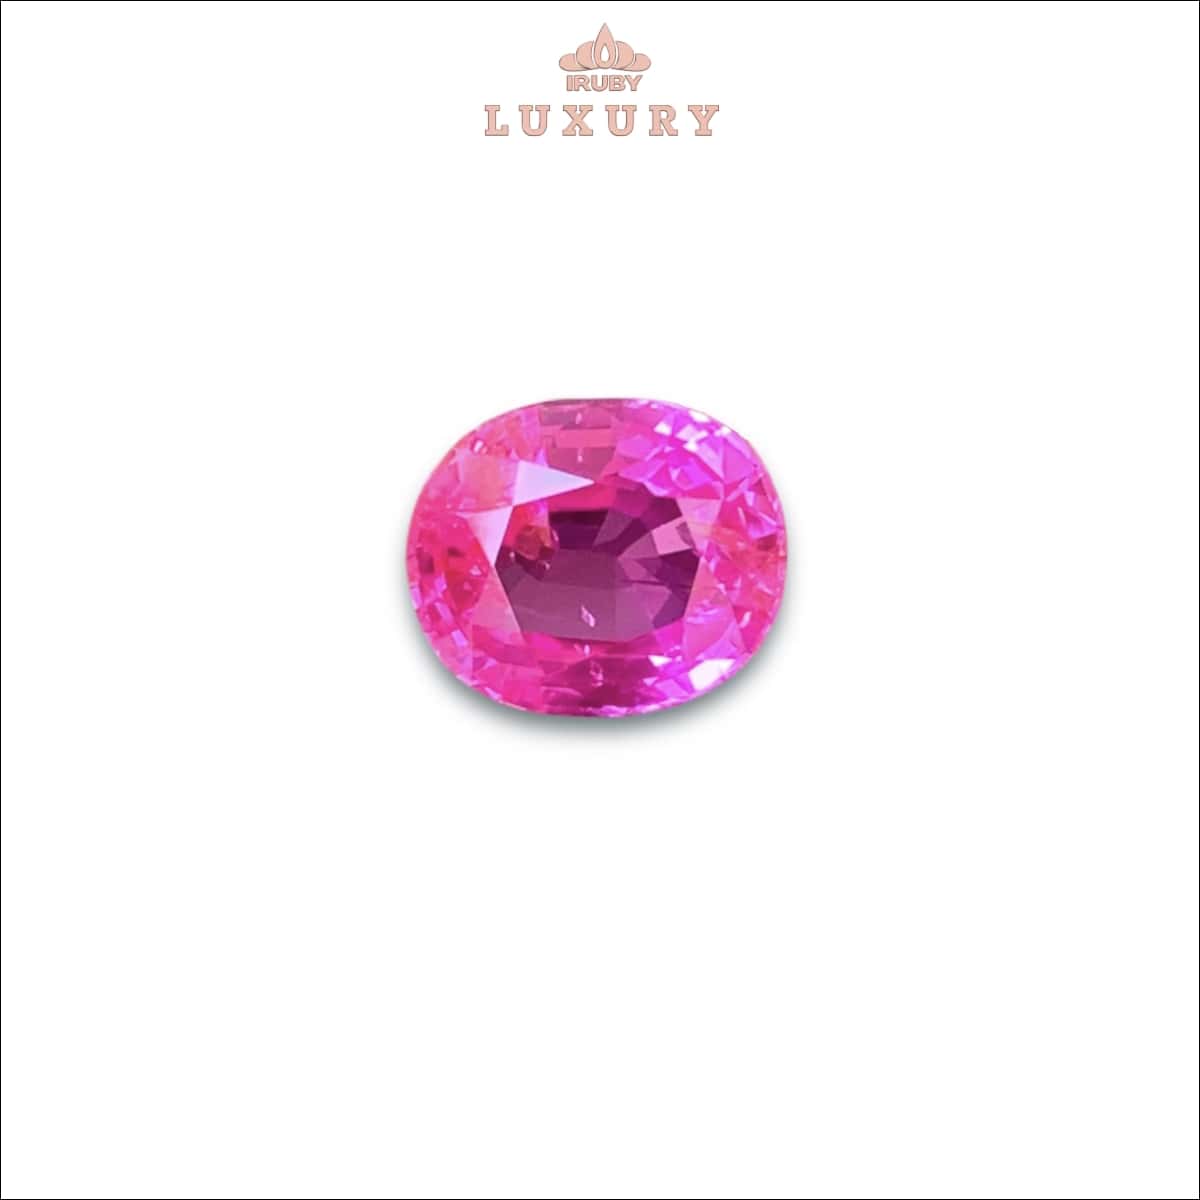 Viên Sapphire màu hot pink 3,30ct tự nhiên 100% - IRPS142 238330